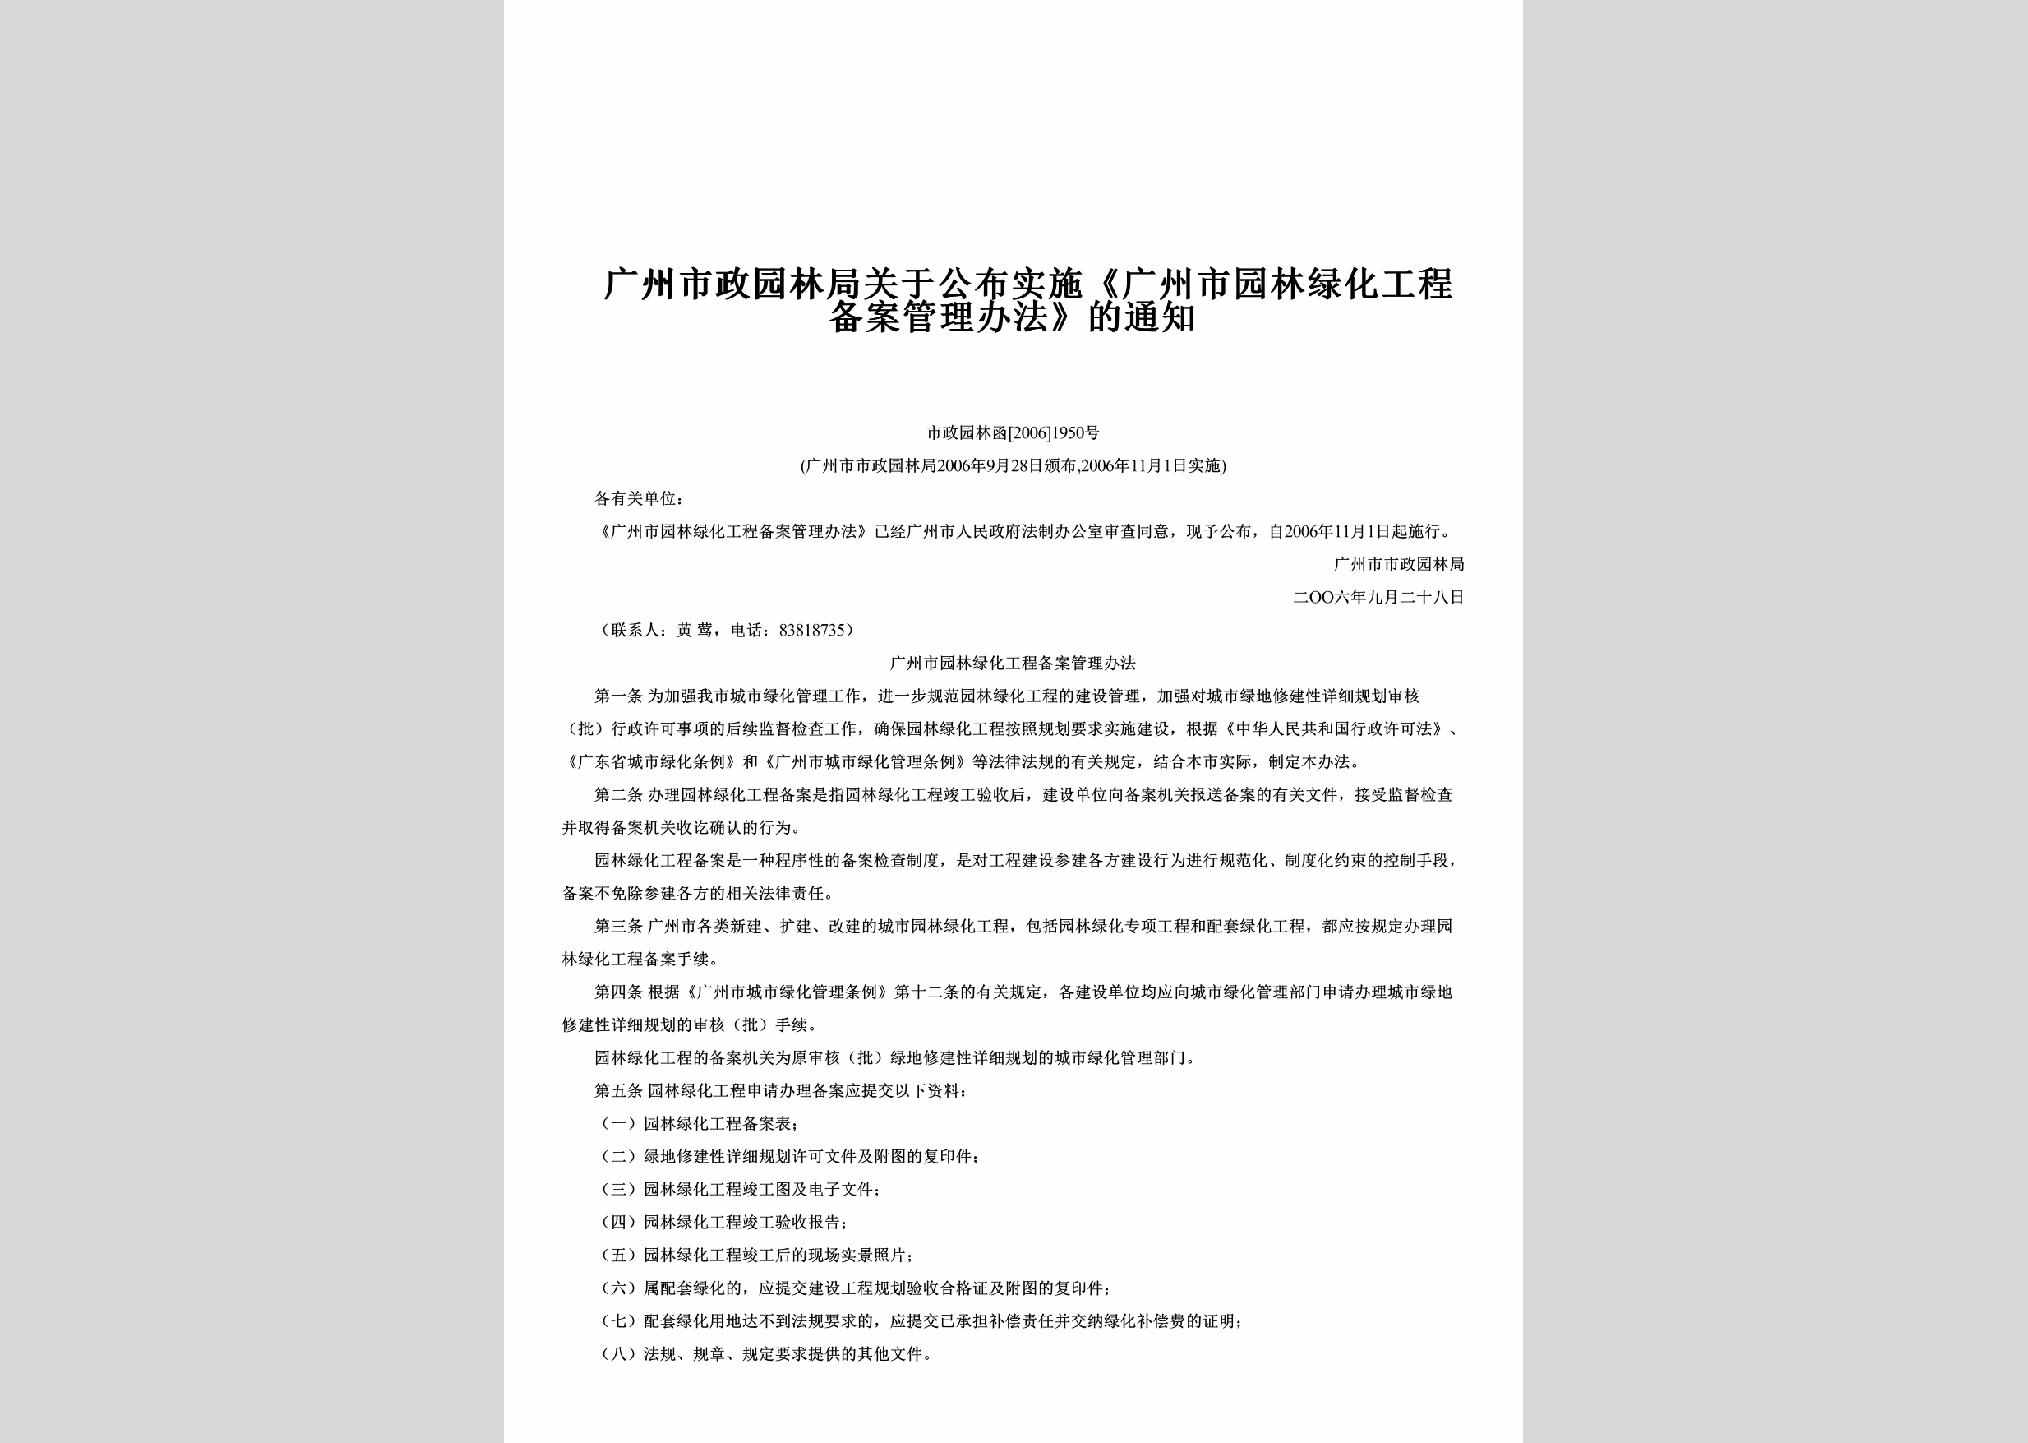 市政园林函[2006]1950号：关于公布实施《广州市园林绿化工程备案管理办法》的通知